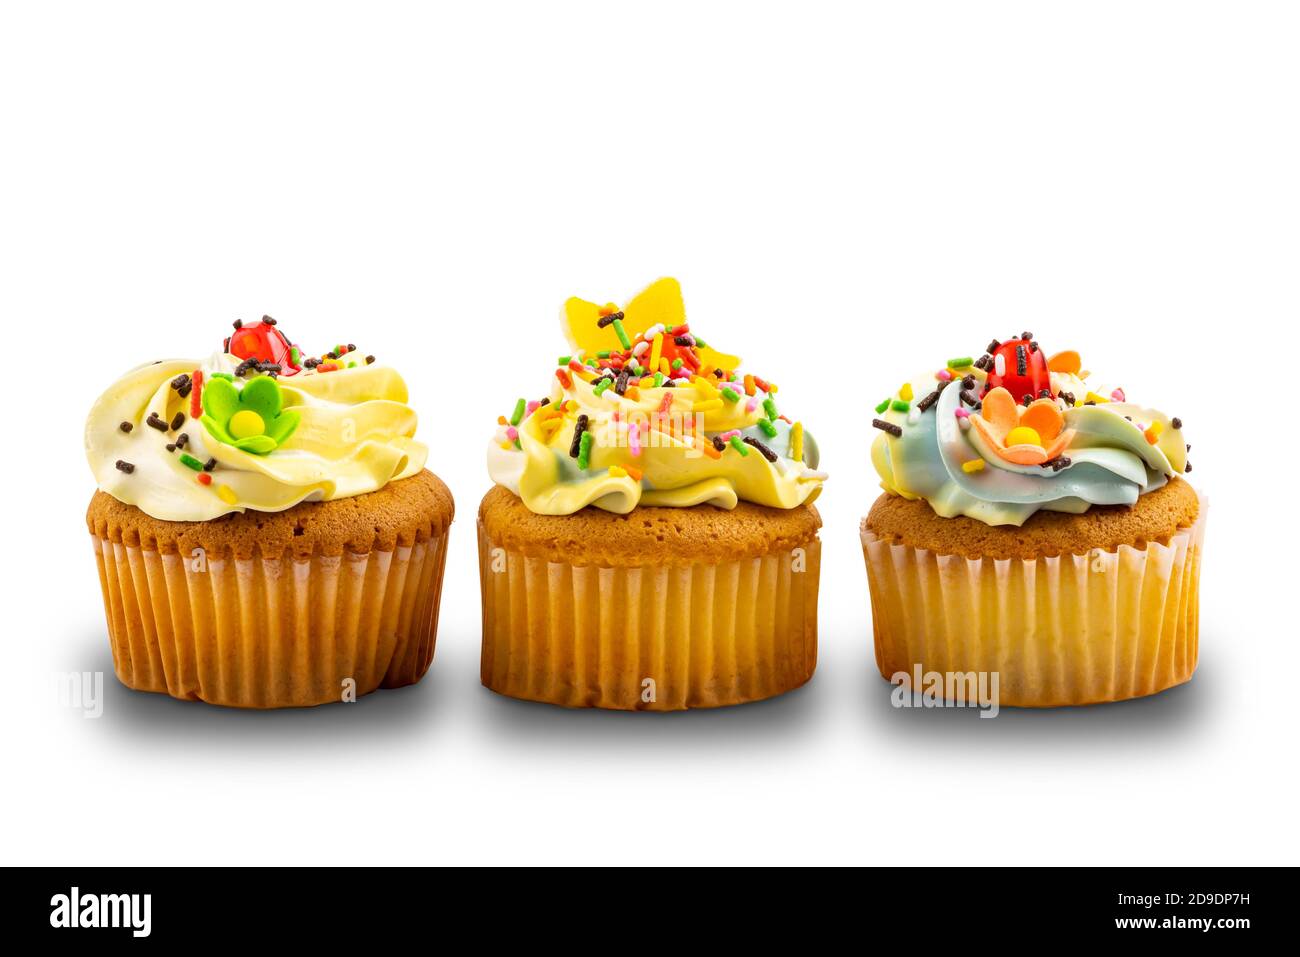 Cupcake alla vaniglia guarnito con crema di burro alla vaniglia, decorato con coloratissimi spruzzi isolati su sfondo bianco con percorso di ritaglio. Foto Stock